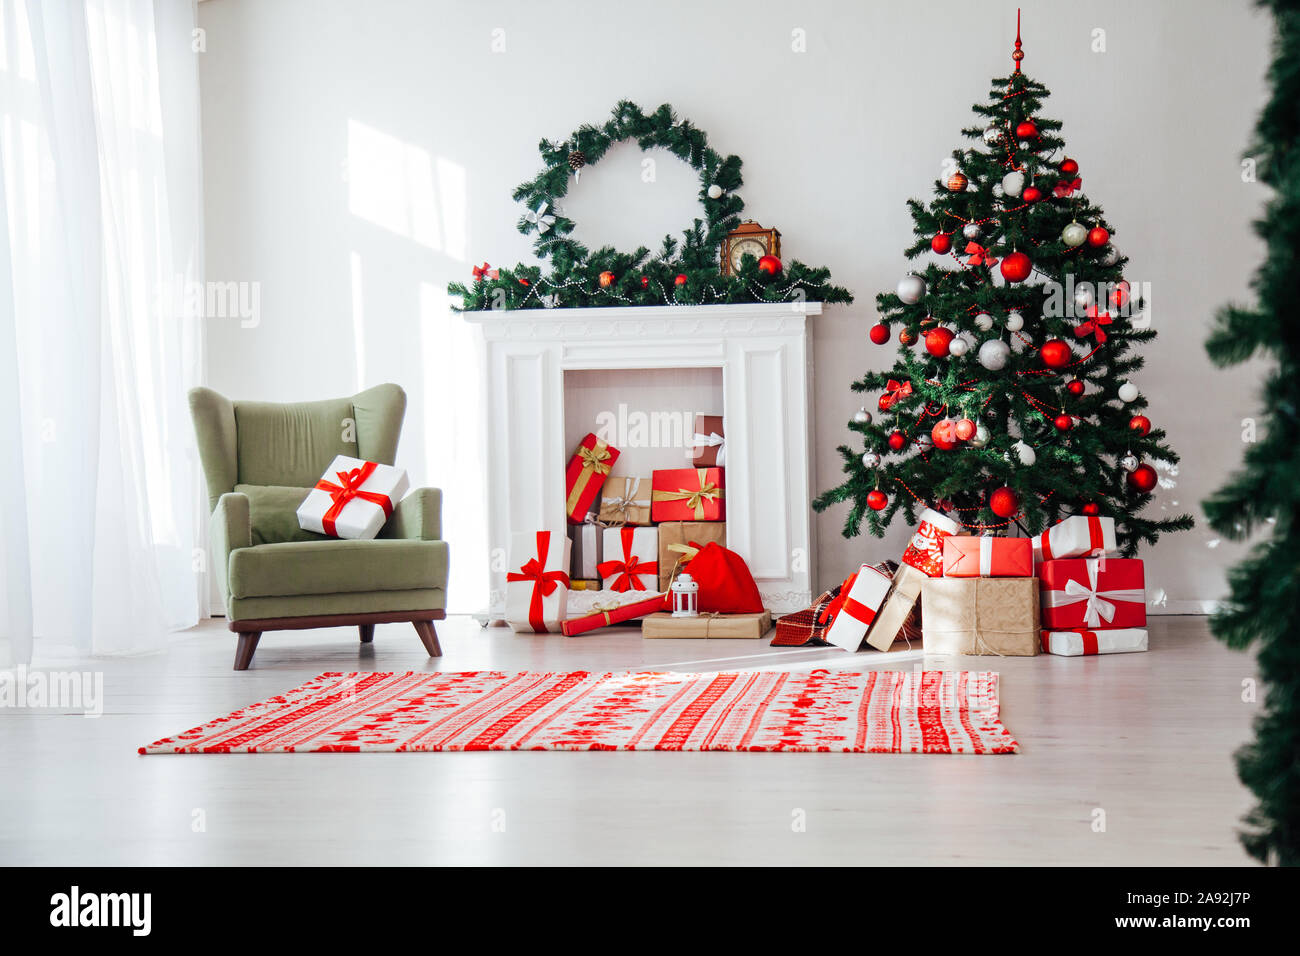 Trang trí Giáng sinh nội thất nhà cửa: Mùa Giáng sinh đang đến rất gần, hãy đến với hình ảnh của chúng tôi để tìm kiếm những ý tưởng trang trí nội thất nhà cửa đầy ấn tượng và sang trọng. Hãy nâng tầm không gian sống của bạn với những bộ trang trí hoàn hảo để tạo nên mùa lễ hội đặc biệt này.